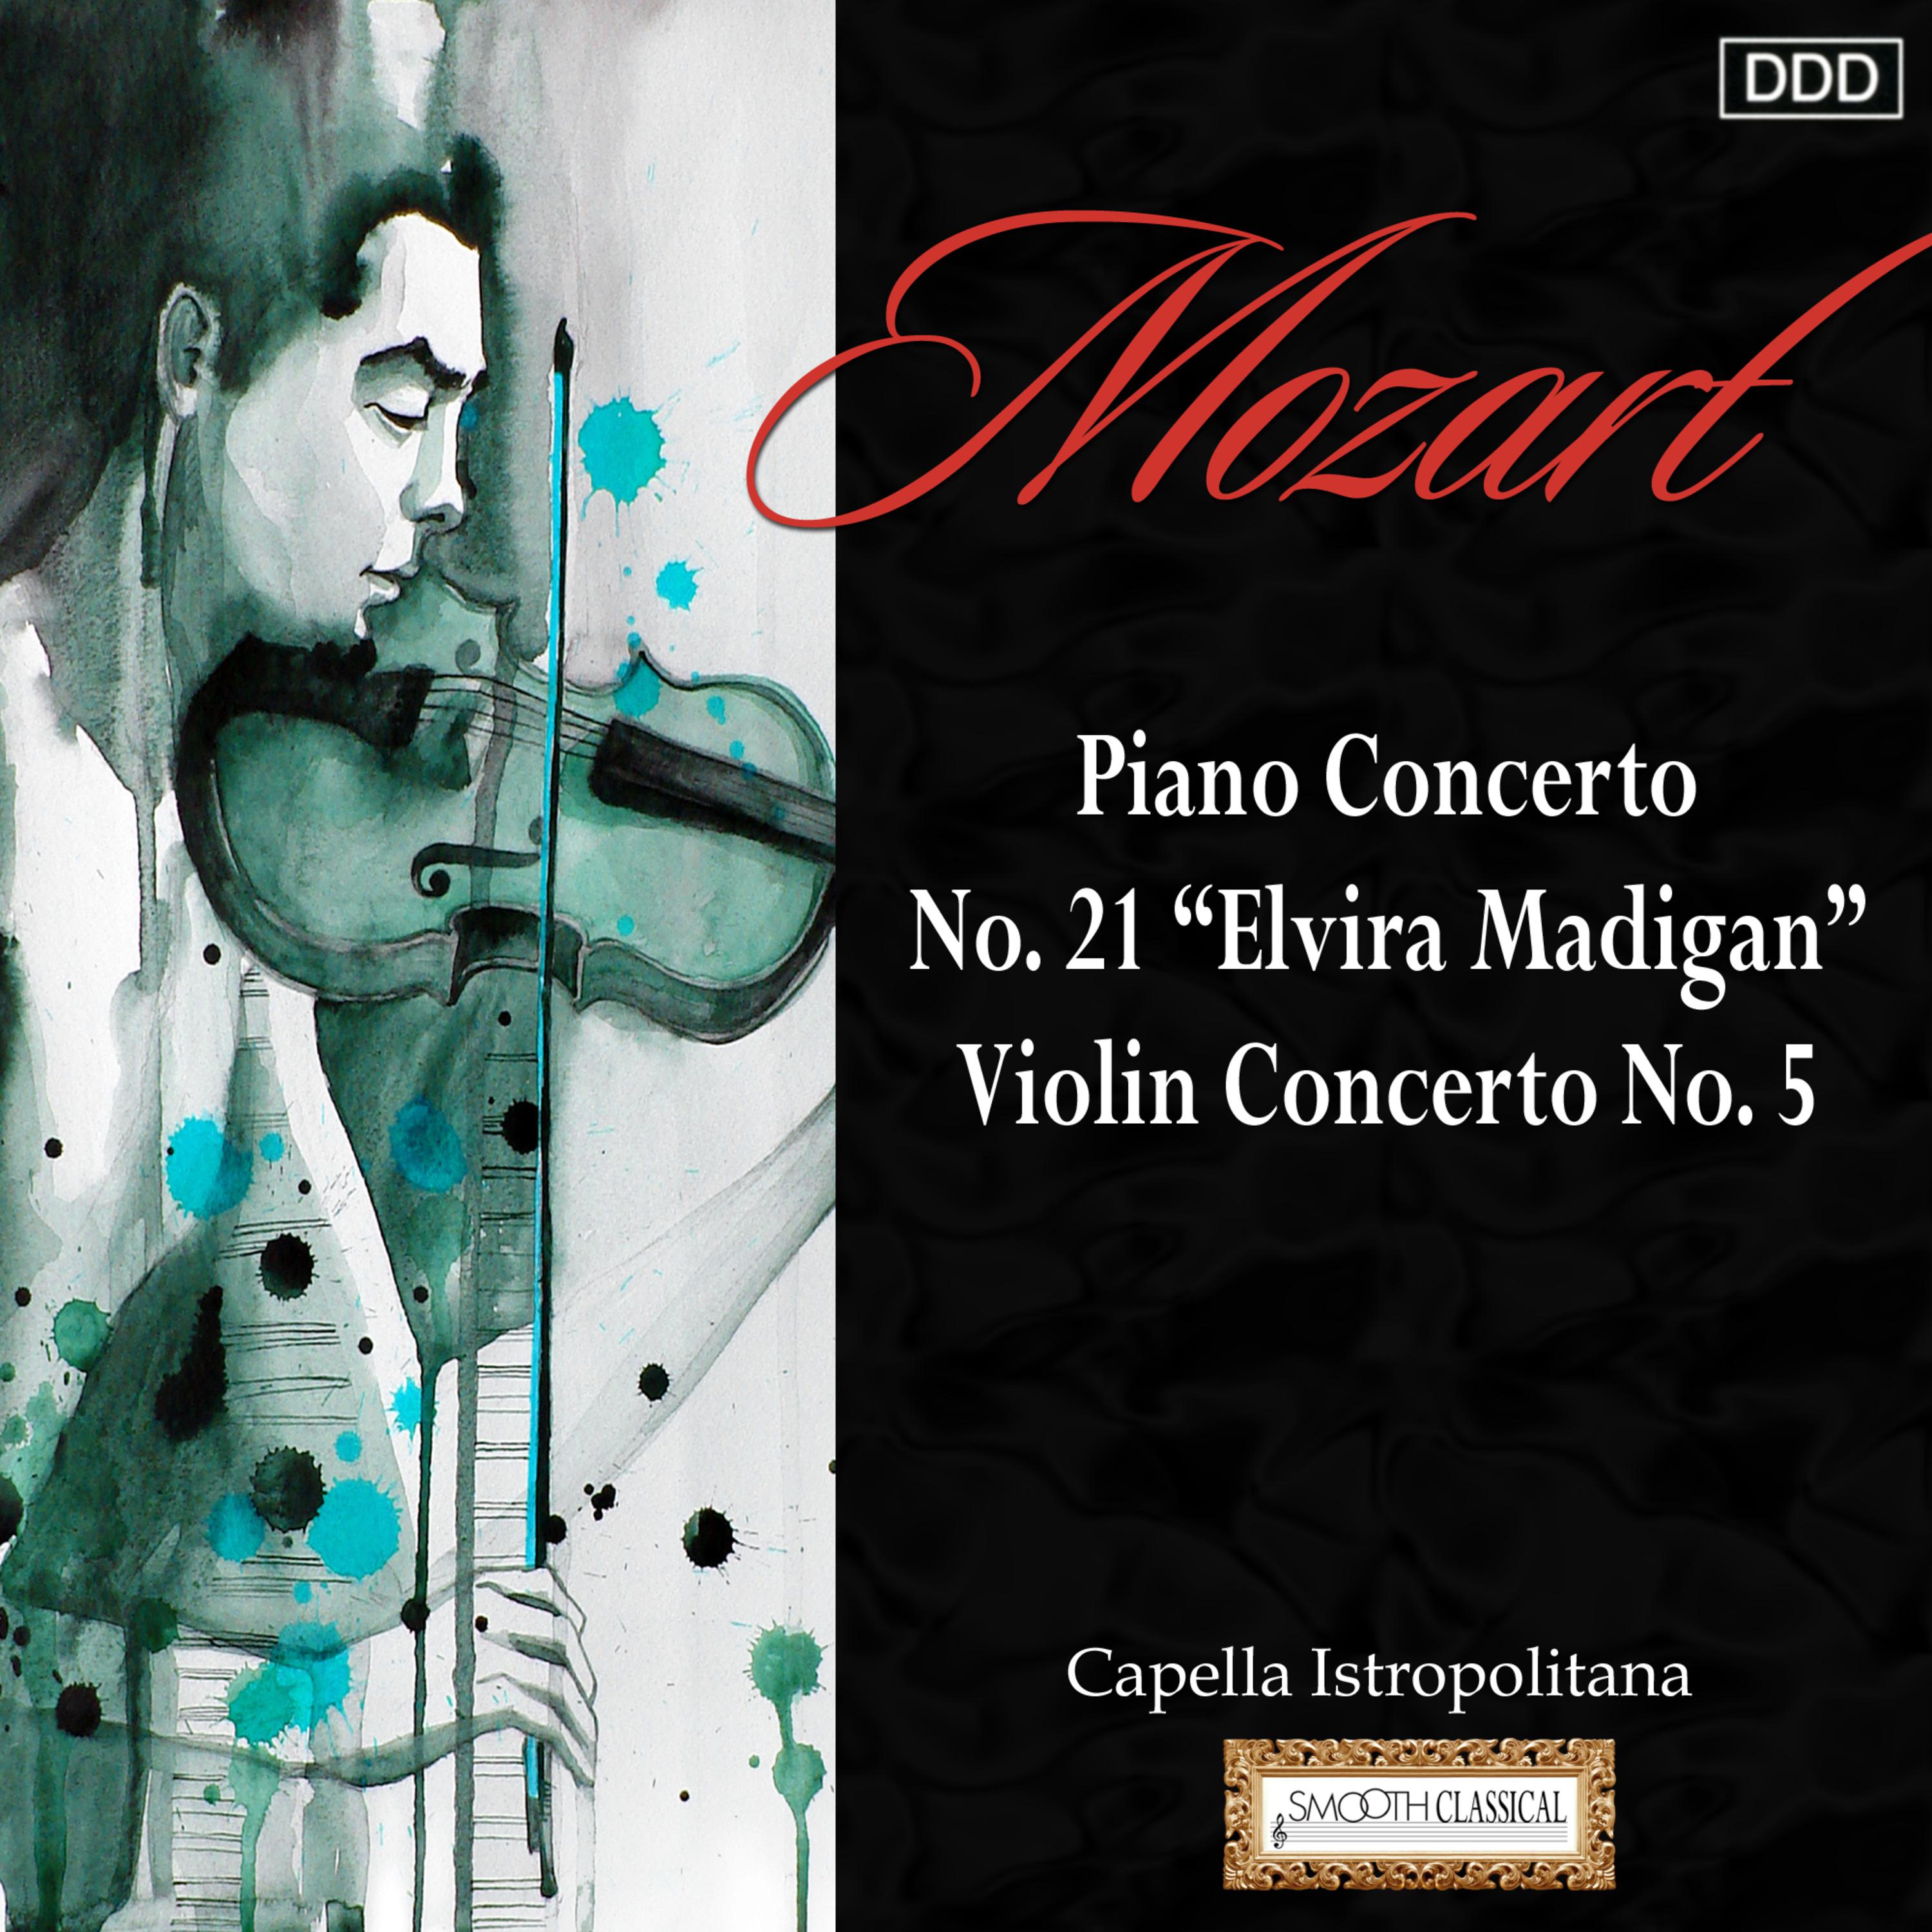 Mozart: Piano Concerto No. 21 "Elvira Madigan" - Violin Concerto No. 5